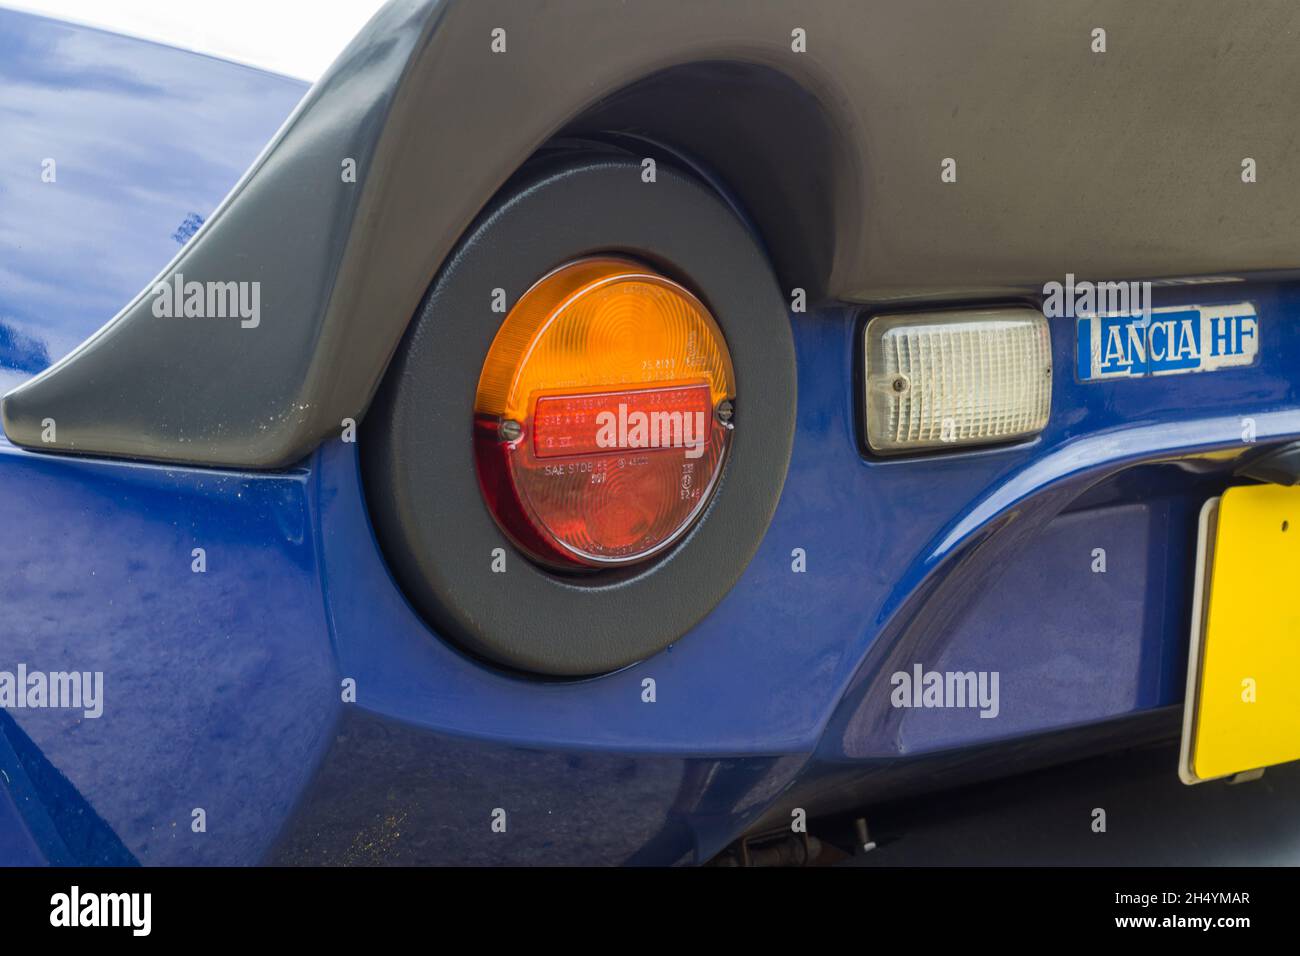 Nahaufnahme der Heckleuchte auf einem blauen Lancia Stratos HF Stradale, einem klassischen italienischen Sport-Rallyewagen. Stockfoto